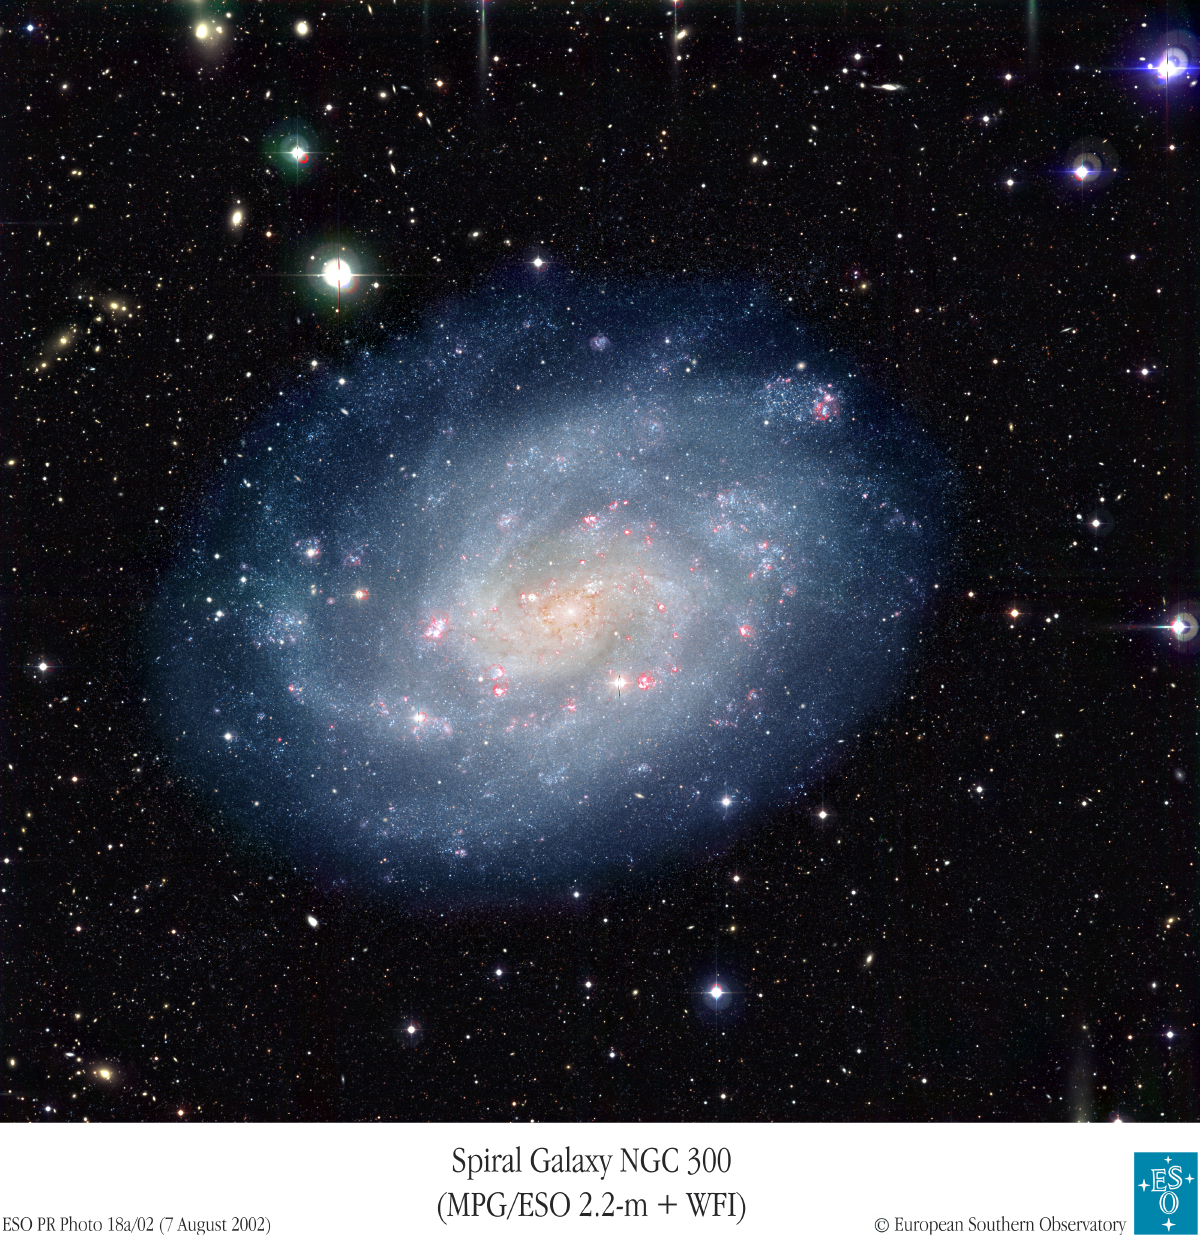 Spiral'naya galaktika NGC 300